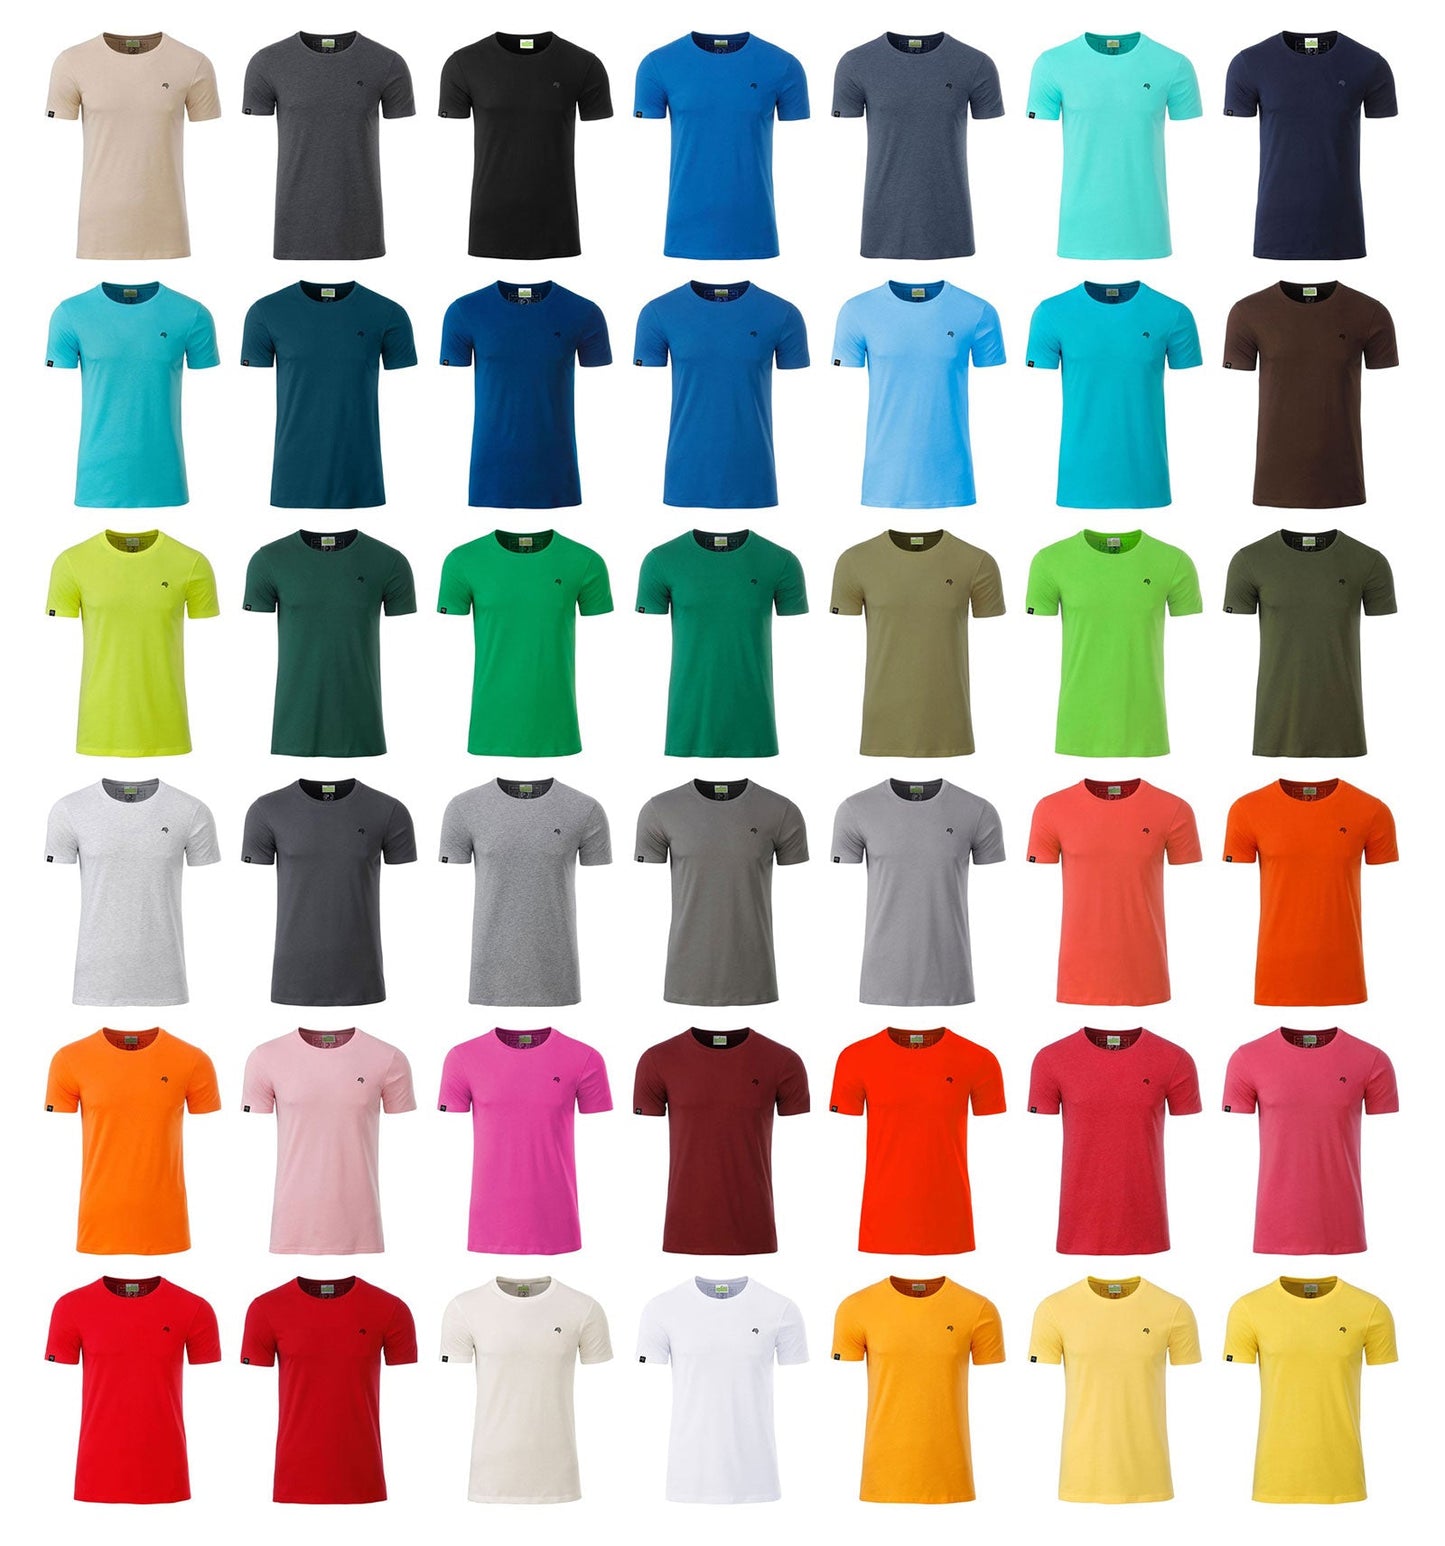 JAN 8008 ― Herren Bio-Baumwolle T-Shirt - Grenadine Rot